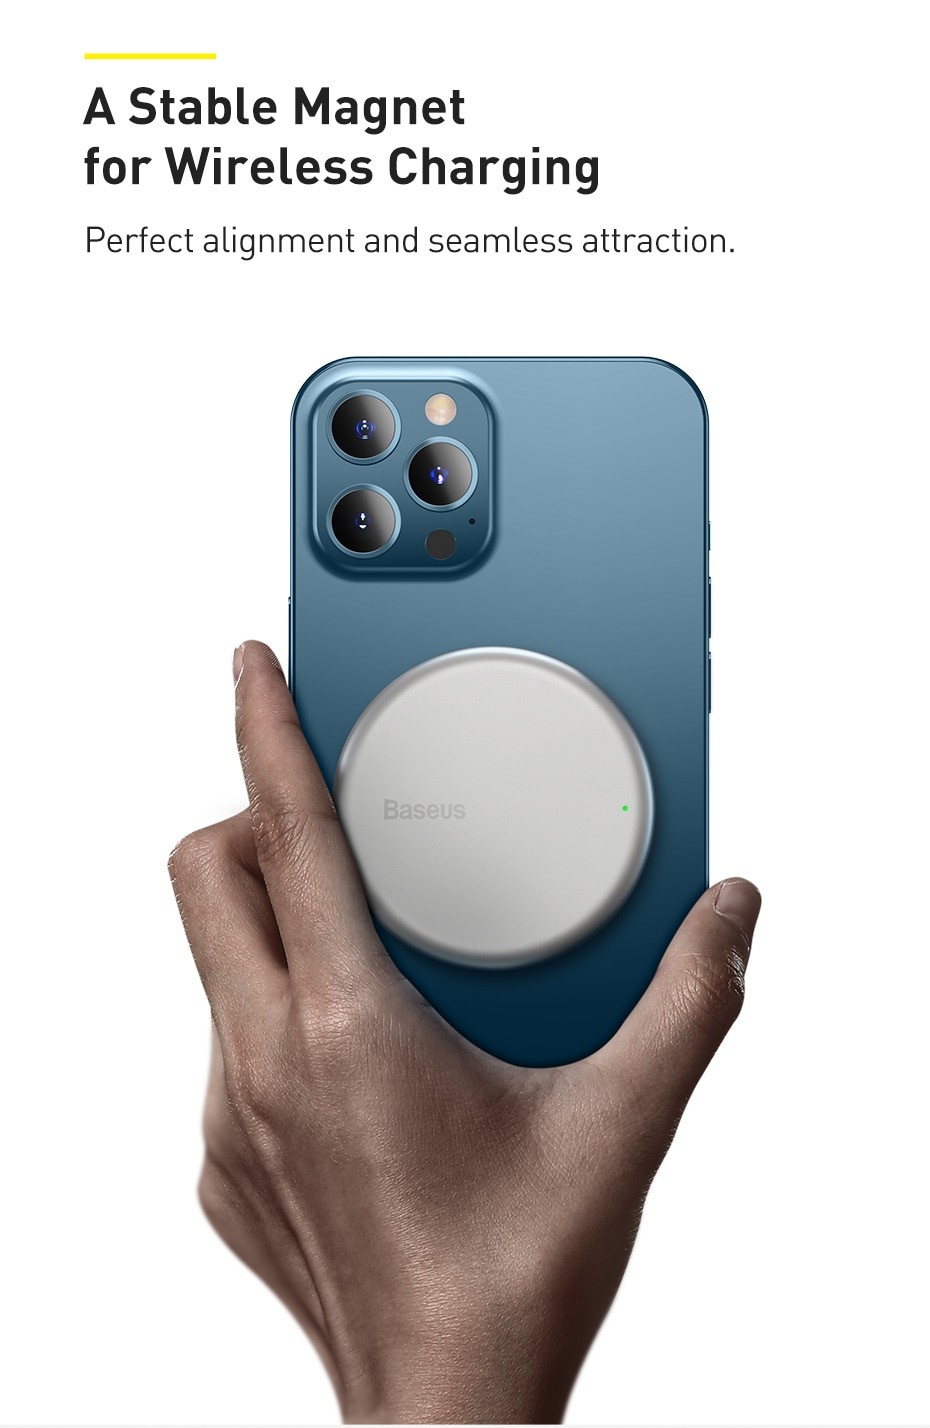 Chargeur magnétique Nueboo pour iPhone 12 Mini